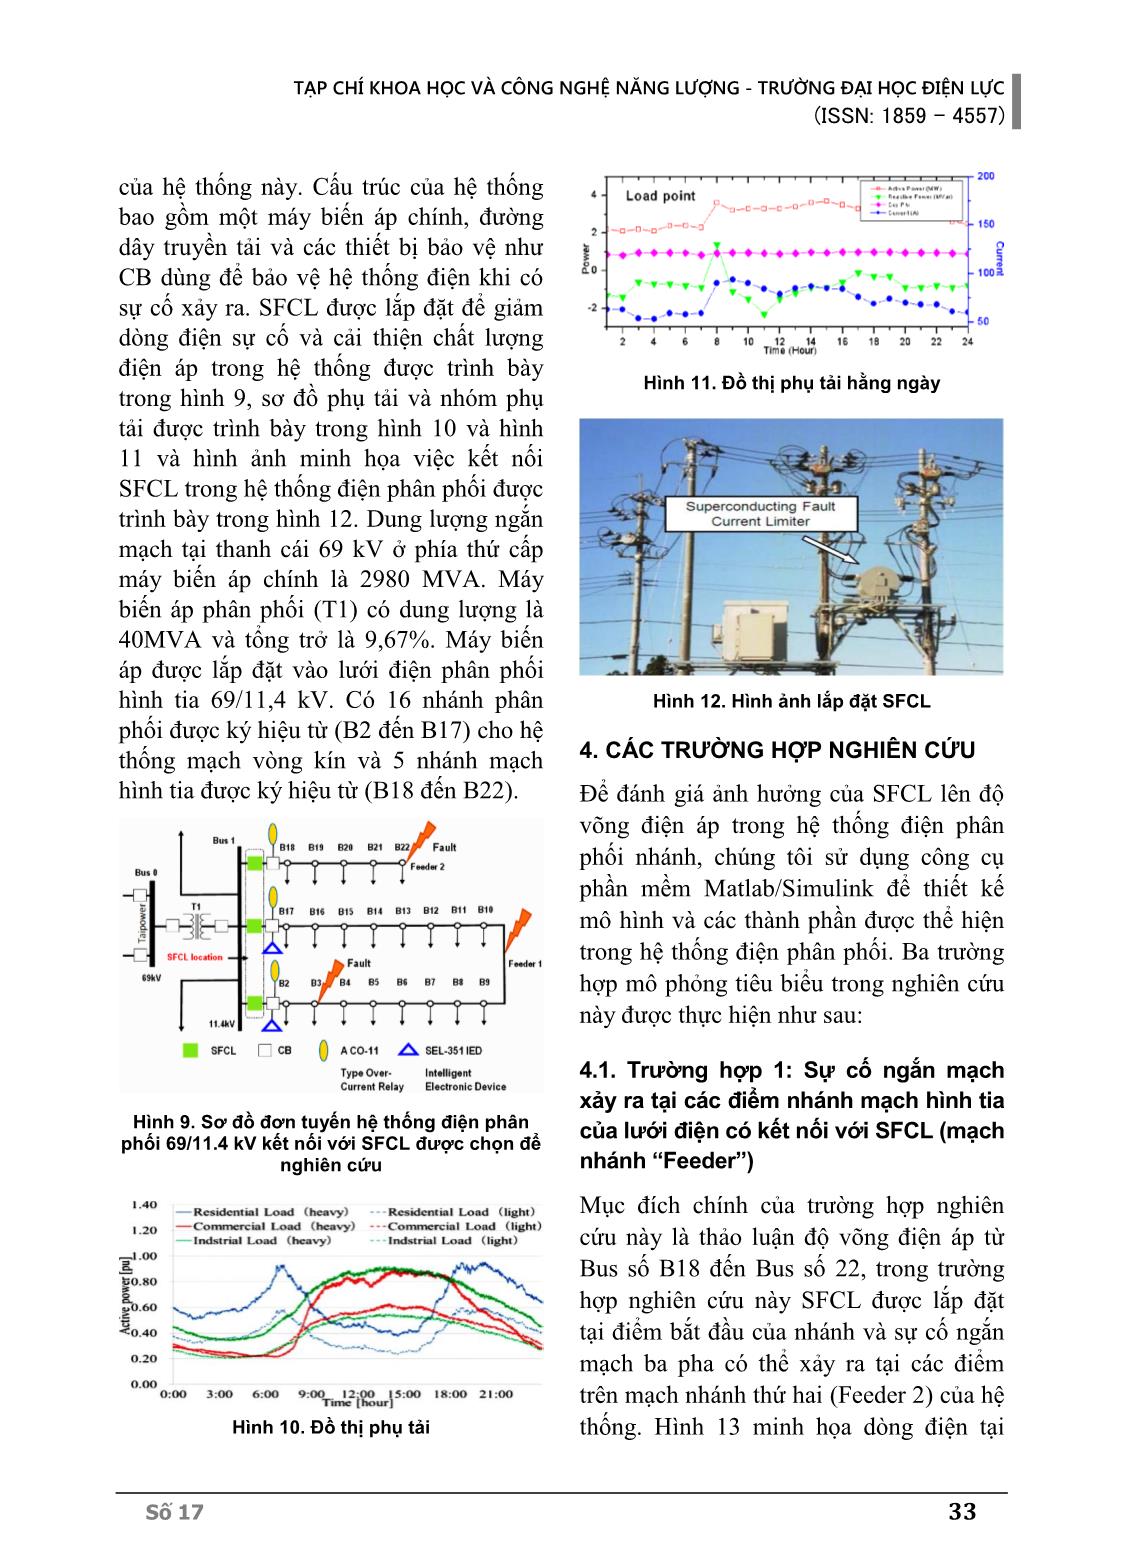 Nghiên cứu cải thiện sụt áp ngắn hạn trong hệ thống điện phân phối sử dụng thiết bị hạn chế dòng ngắn mạch bằng vật liệu siêu dẫn kiểu điện trở (R_SFCL) trang 5